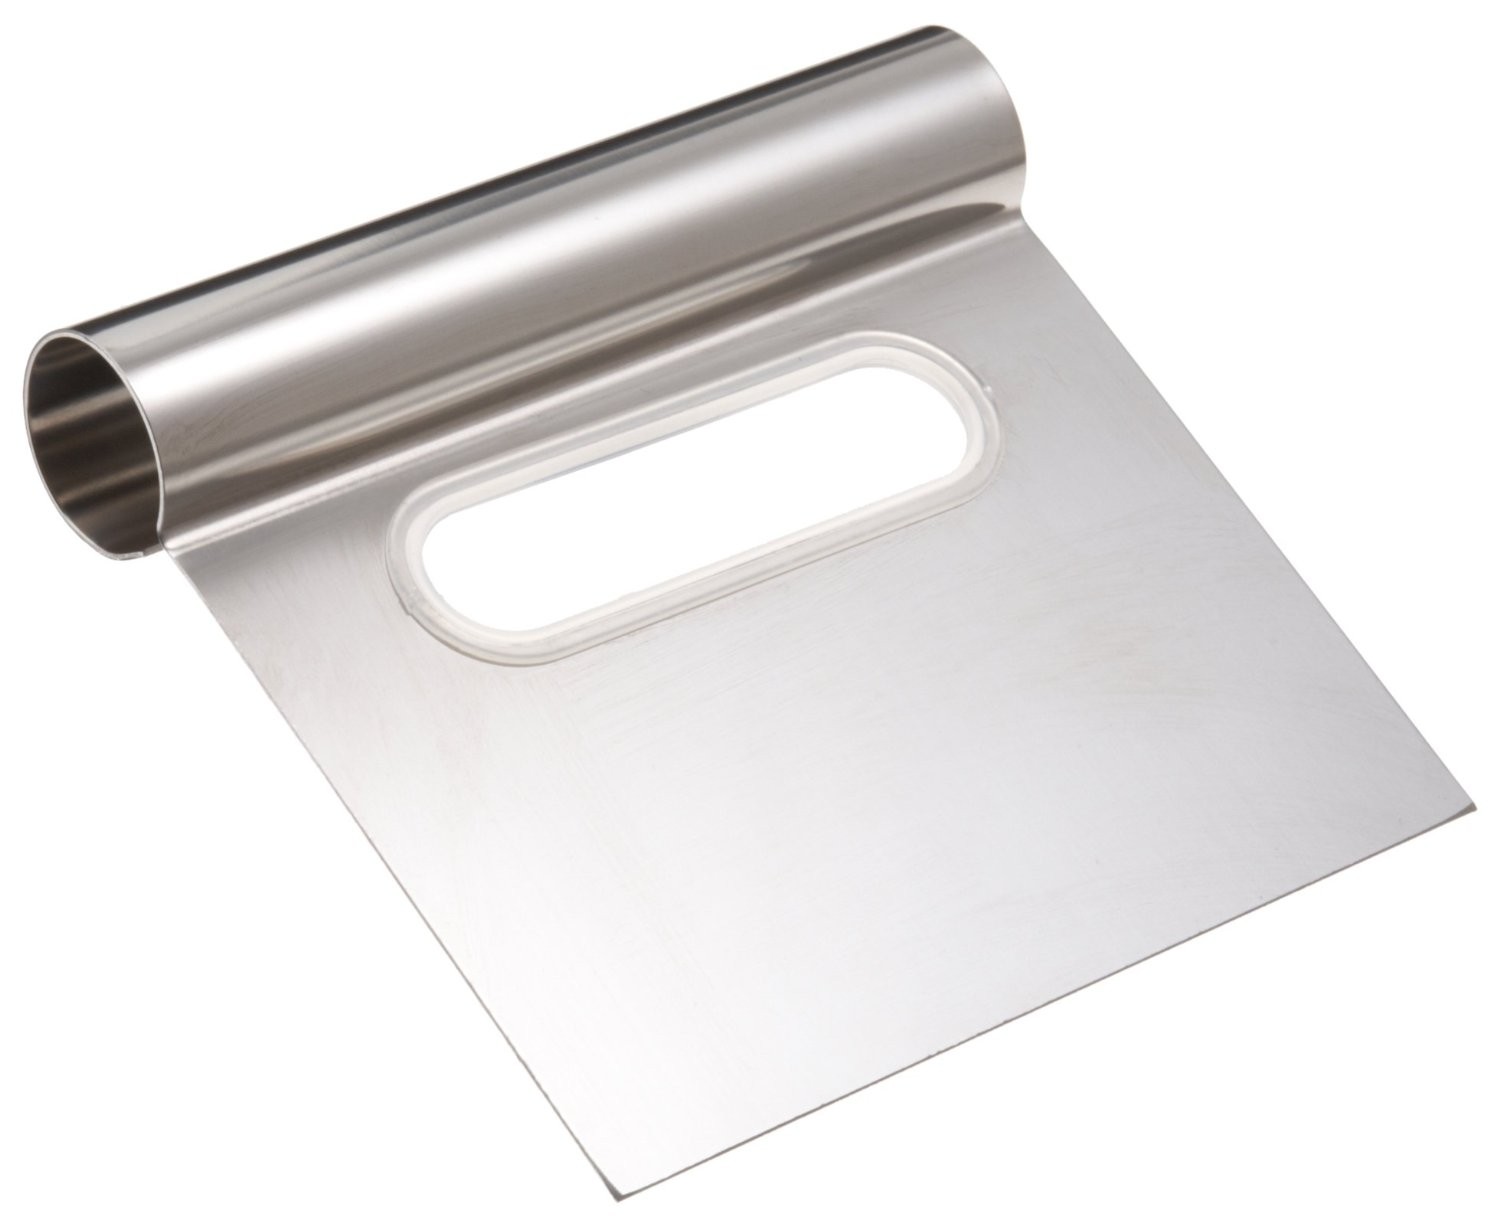 https://www.pastrychefsboutique.com/10515/ateco-1300-ateco-stainless-steel-bench-scraper-4-wide-blade-metal-scrapers.jpg